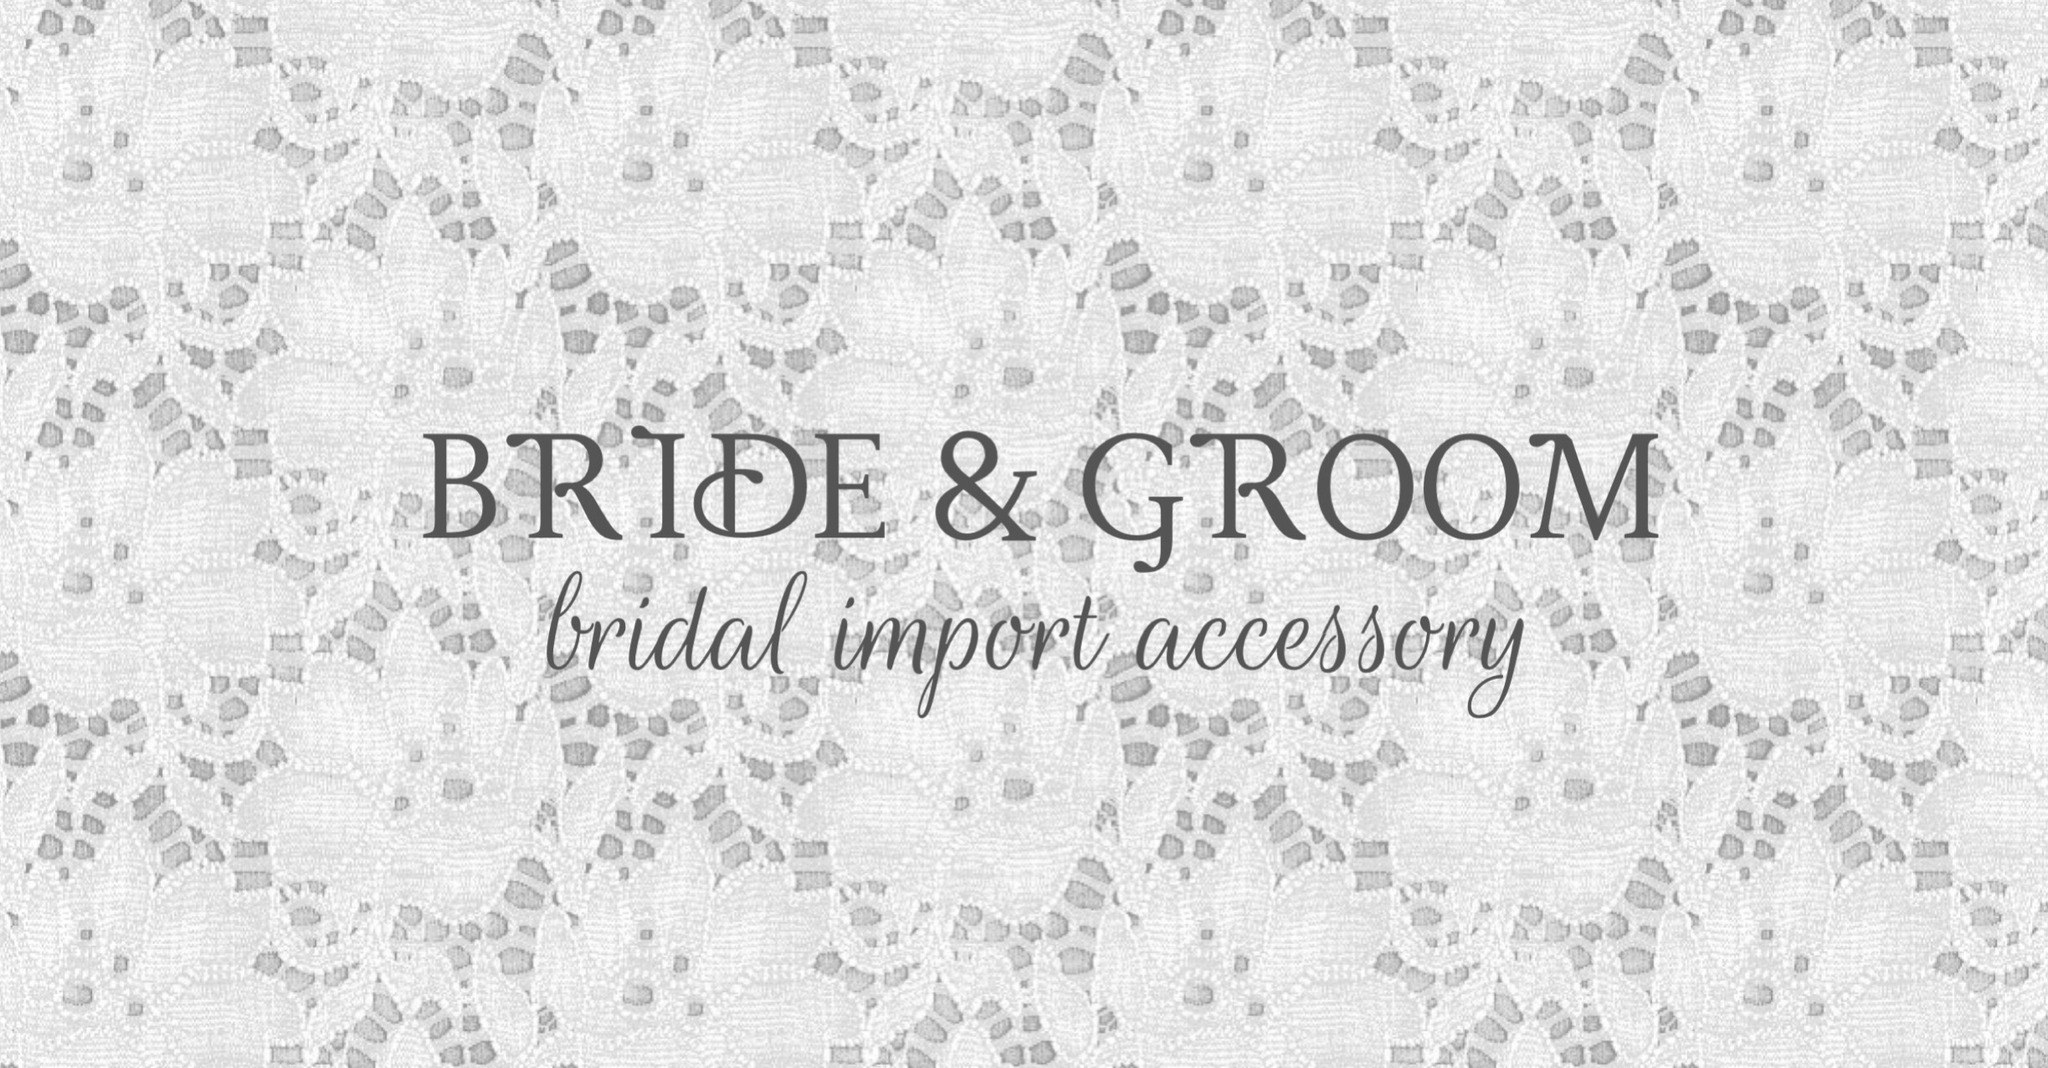 BRIDE & GROOM